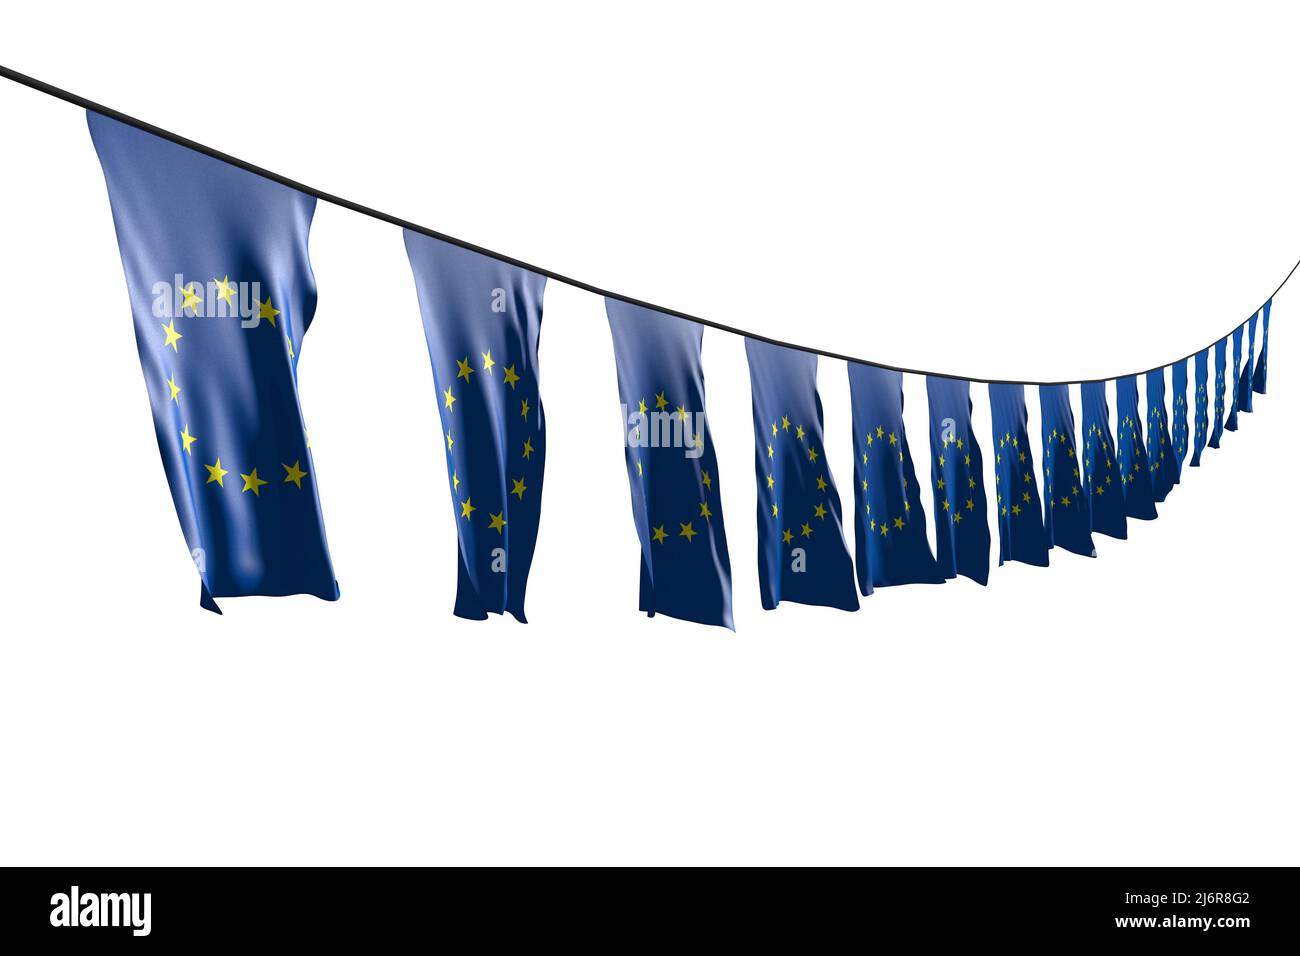 Schöne Festflagge 3D Illustration - viele Flaggen oder Banner der Europäischen Union hängen diagonal mit perspektivischer Ansicht auf Schnur isoliert auf Weiß Stockfoto